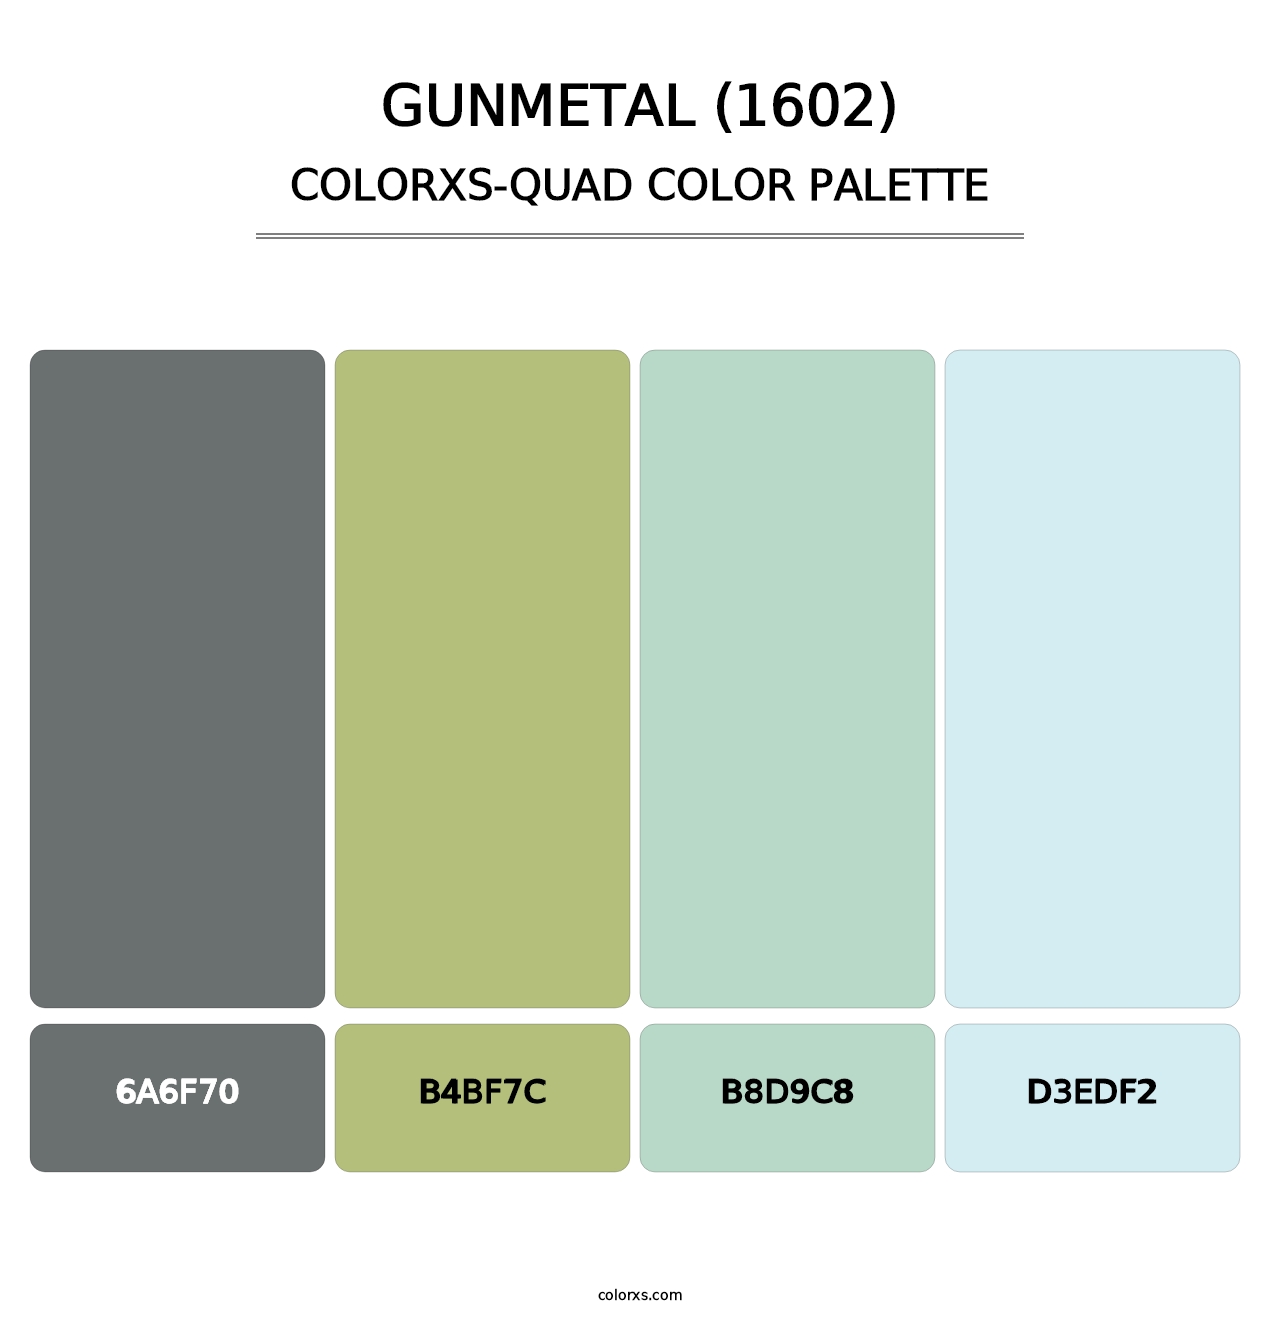 Gunmetal (1602) - Colorxs Quad Palette